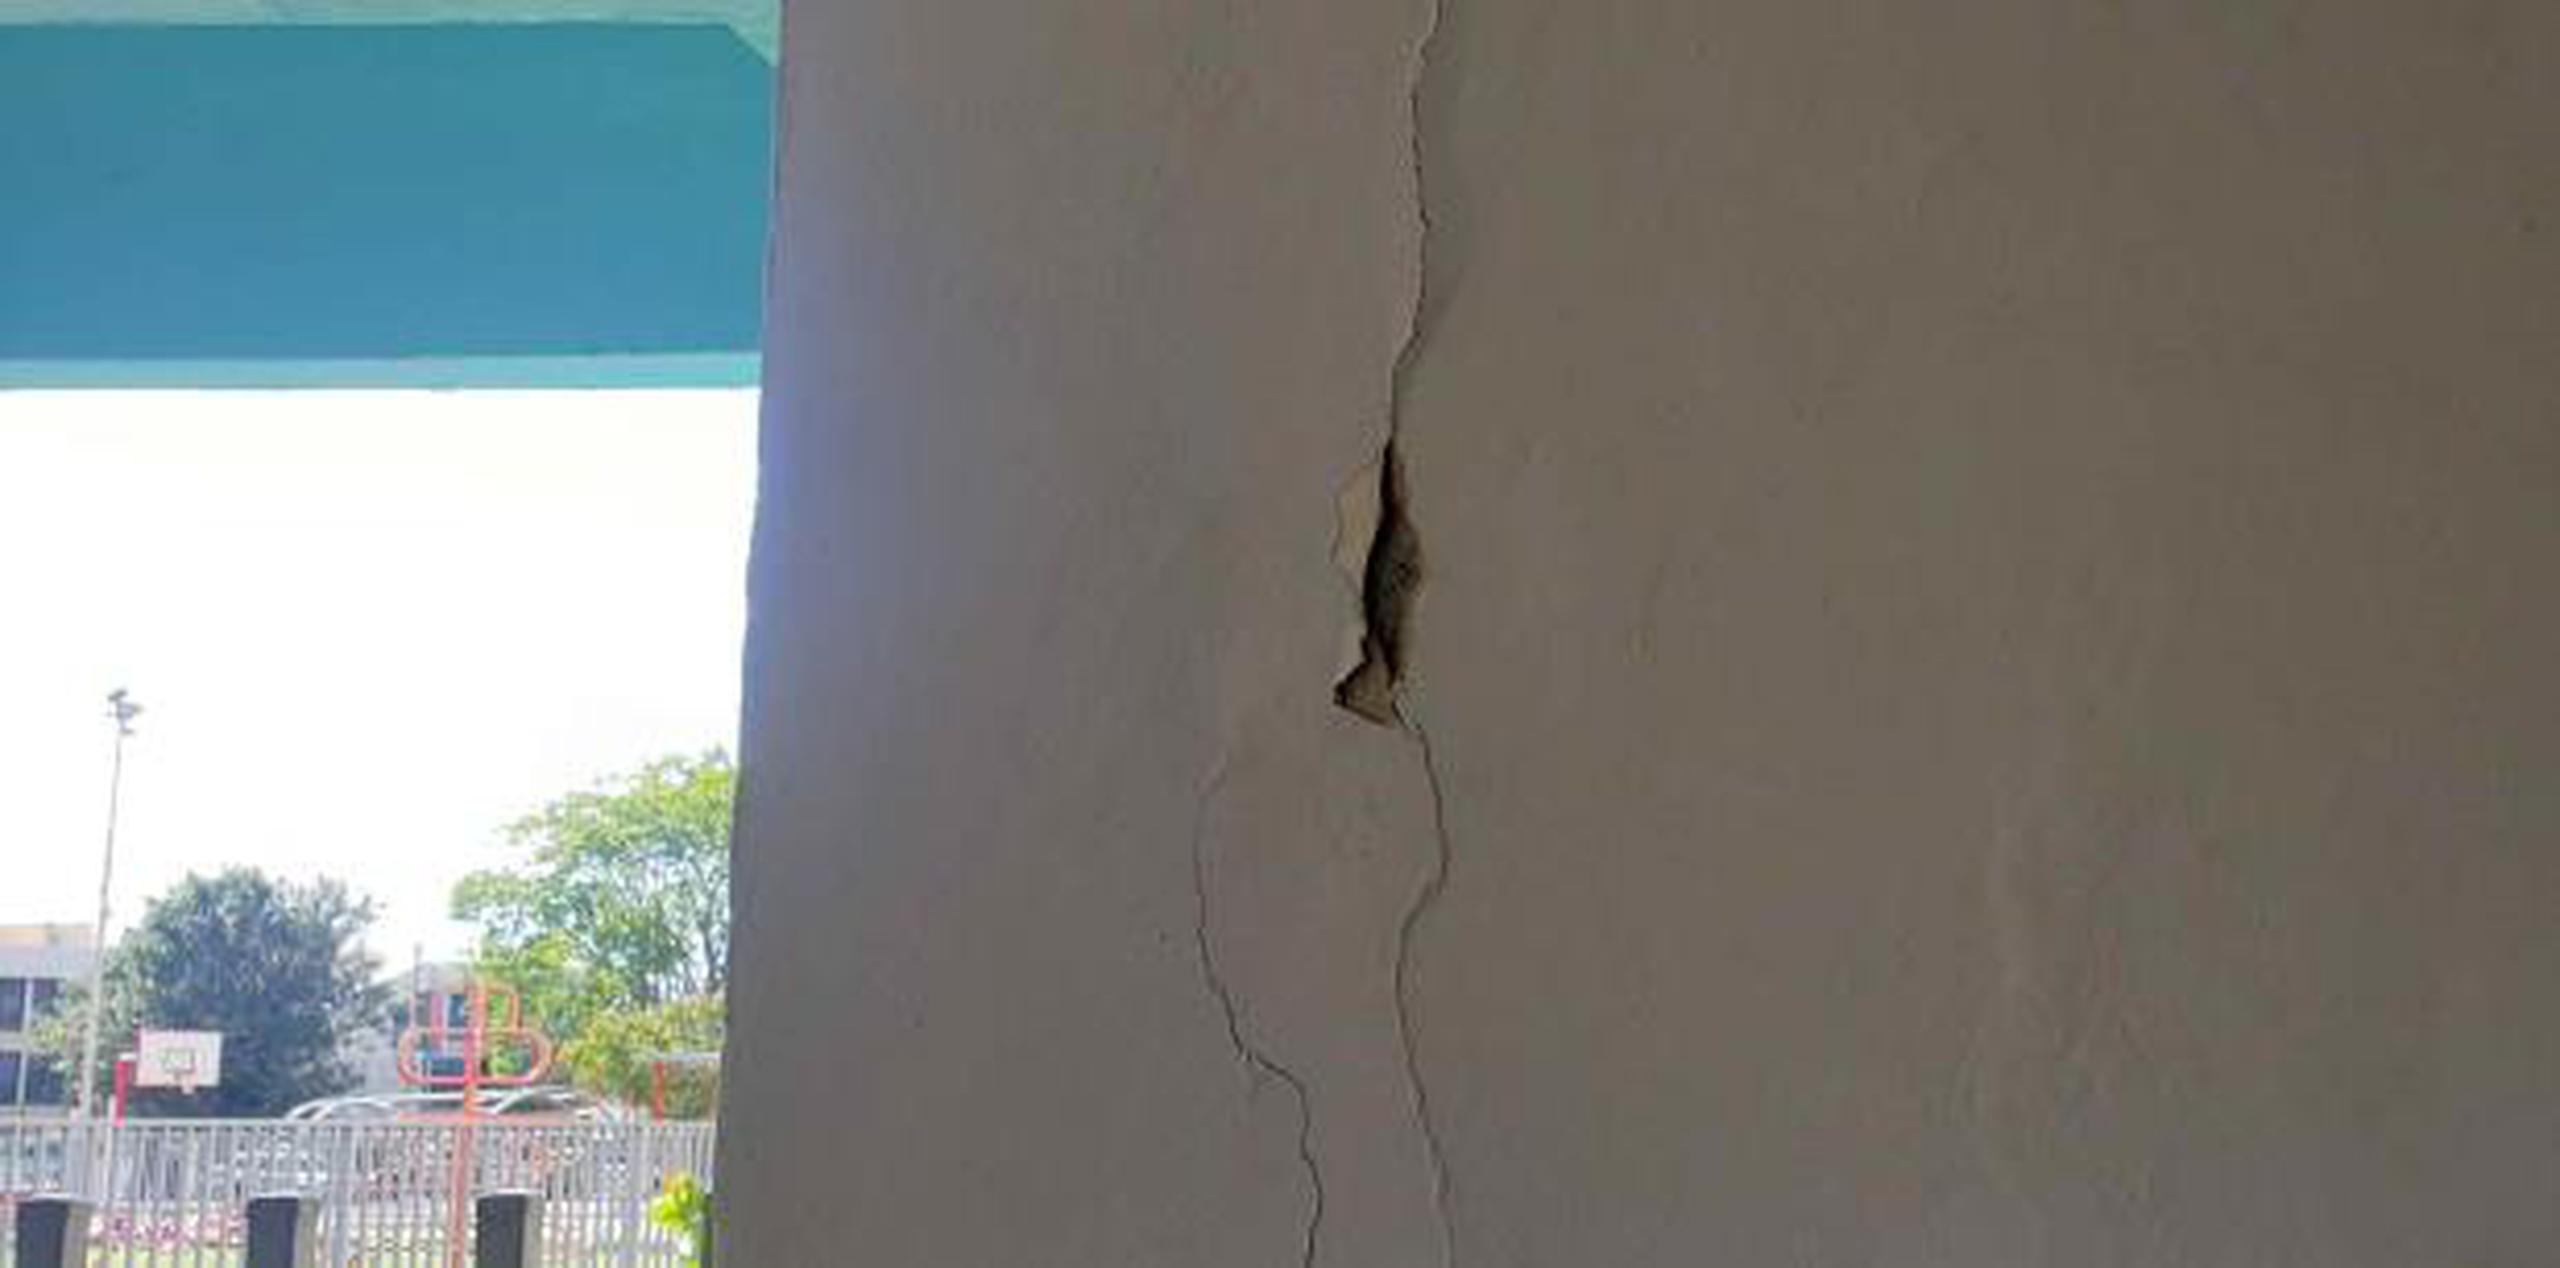 El complejo de viviendas es una de las estructuras afectadas en Ponce por los temblores de las pasadas semanas. (sandra.torres@gfrmedia.com)
